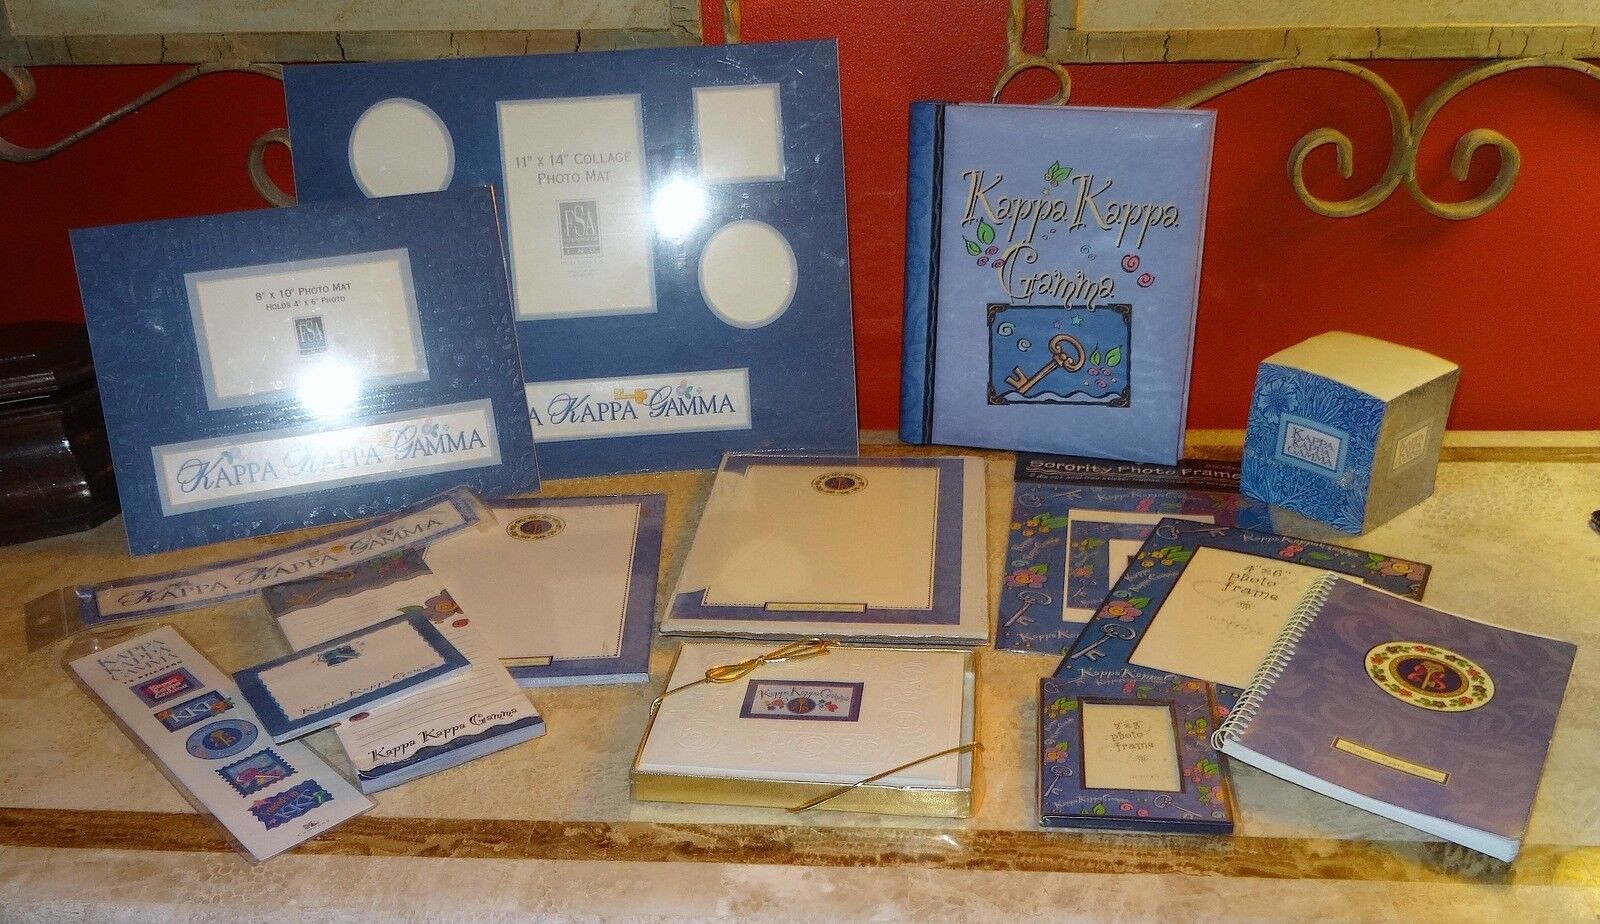 15 Kappa Kappa Gamma items-photo album, mats, address book, stationery, stickers K & Co.